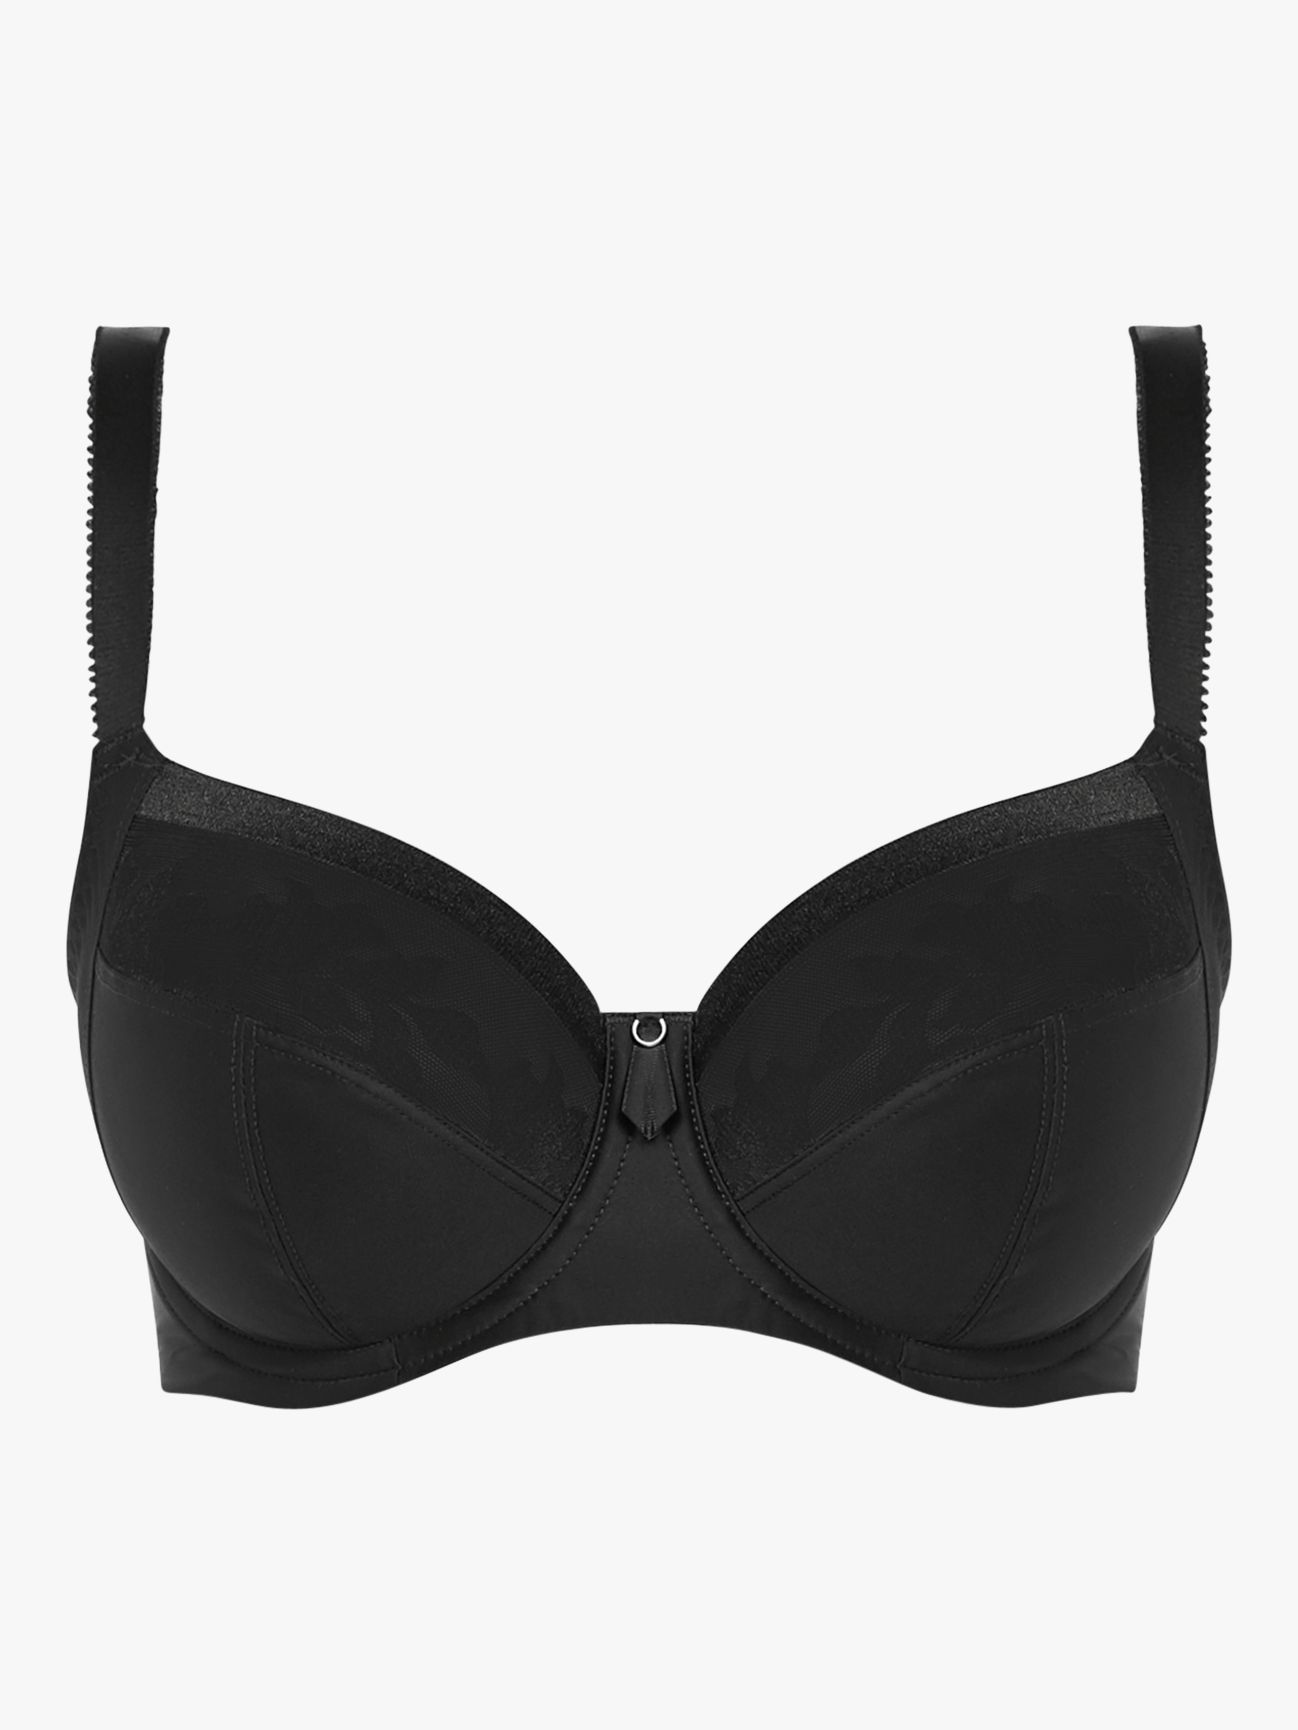 Fantasie Illusion Side Support Bra - Wired bra - Bras - Underwear -  Timarco.co.uk